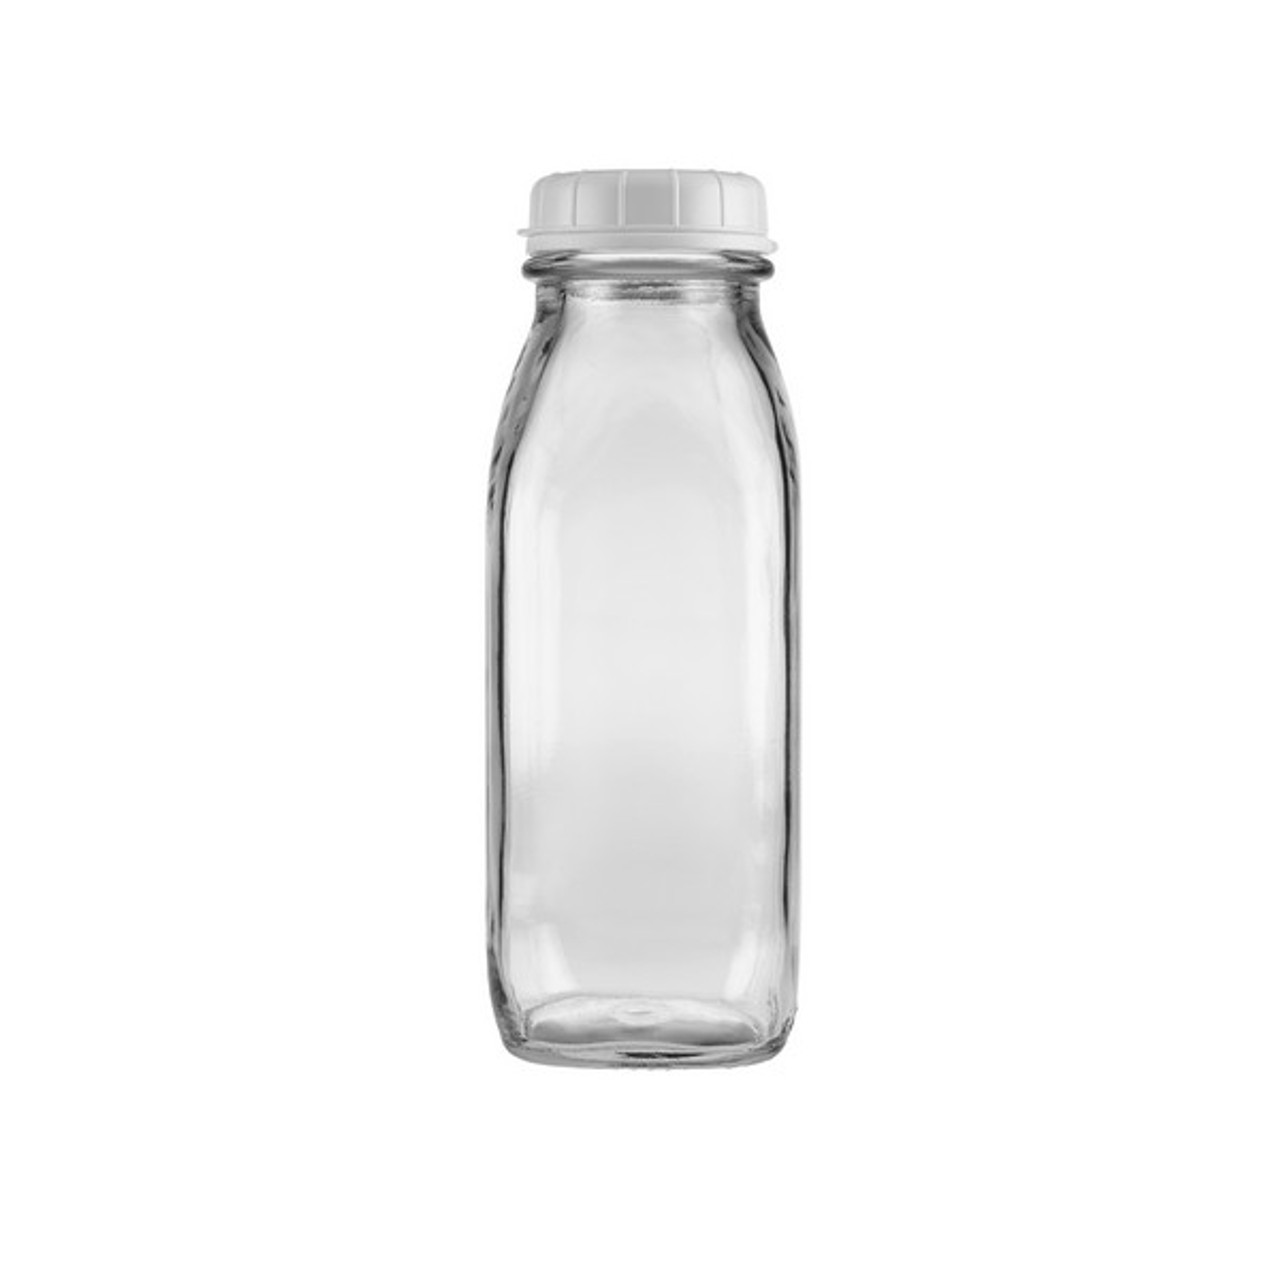 16 Oz Glass Milk Bottles White Tamper Evident Cap Berlin